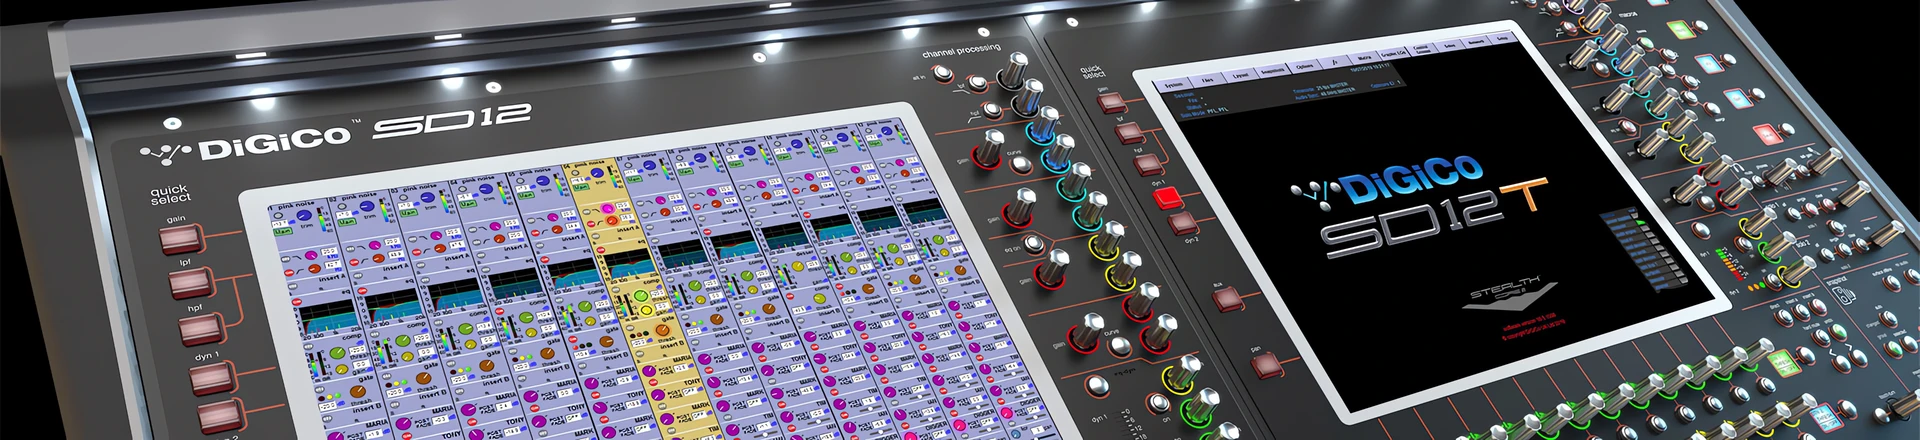 DiGiCo wprowadza nowe oprogramowanie dla teatrów i rynku live SD12T (PLASA Show)